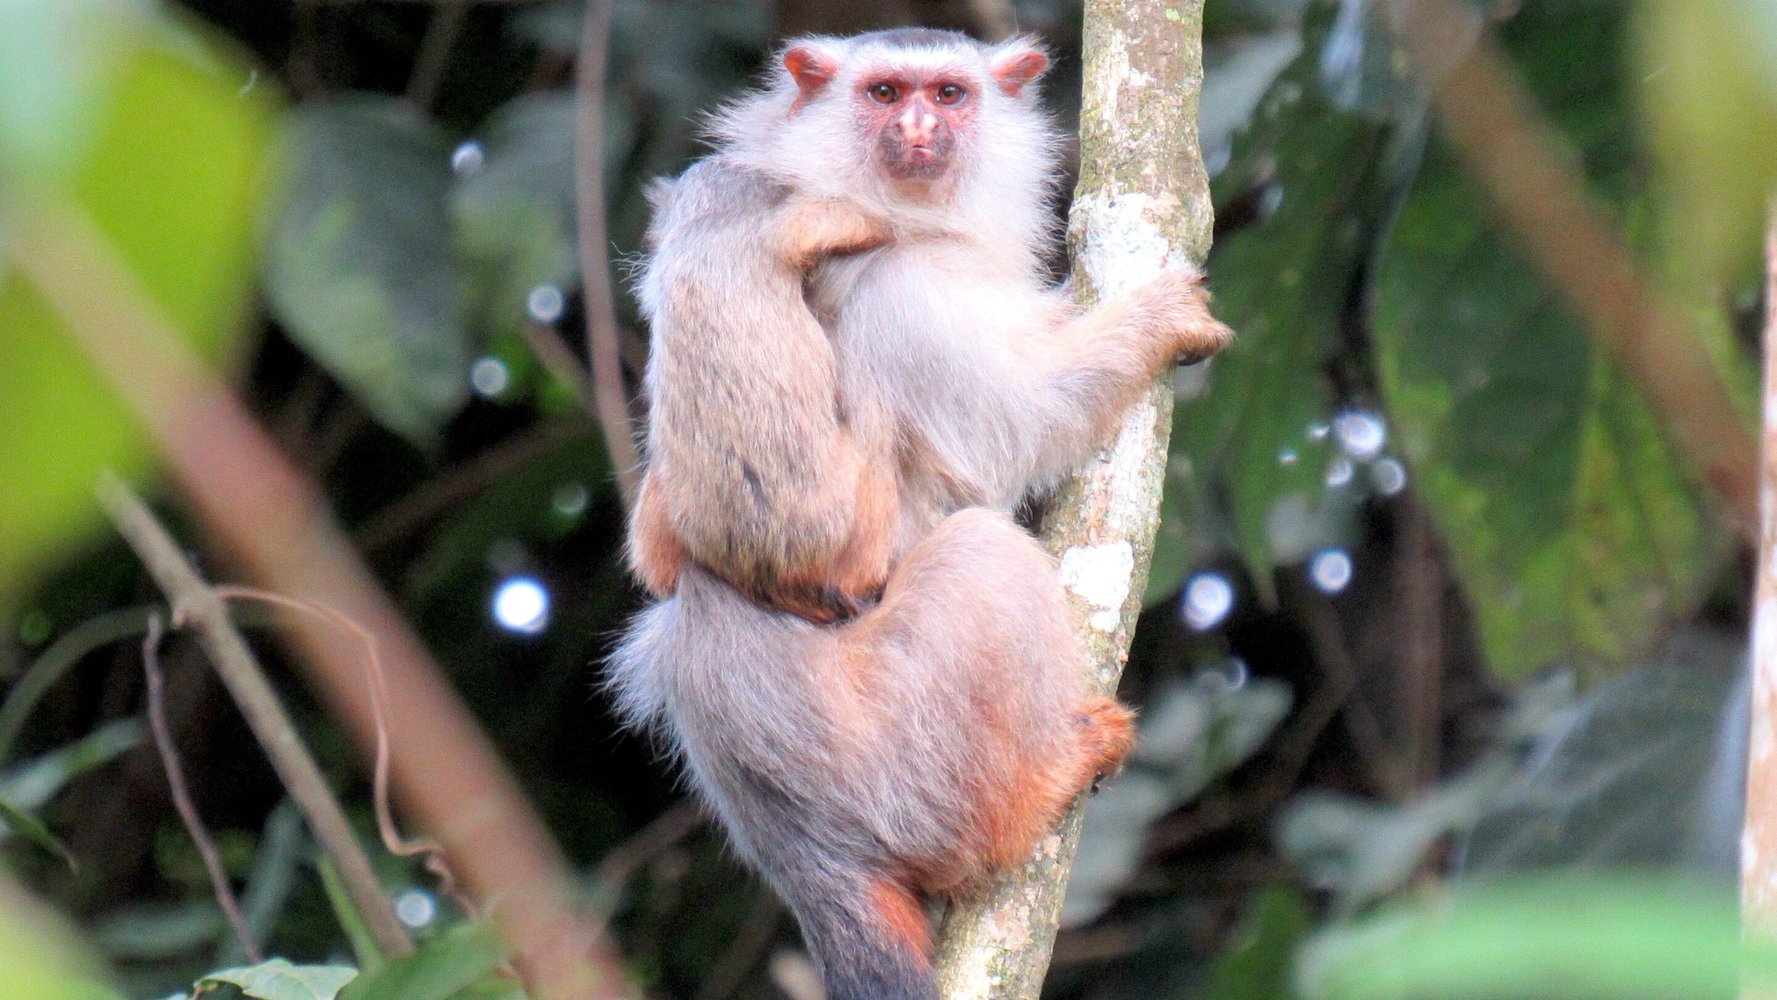 В Бразилии обнаружили новый вид обезьян